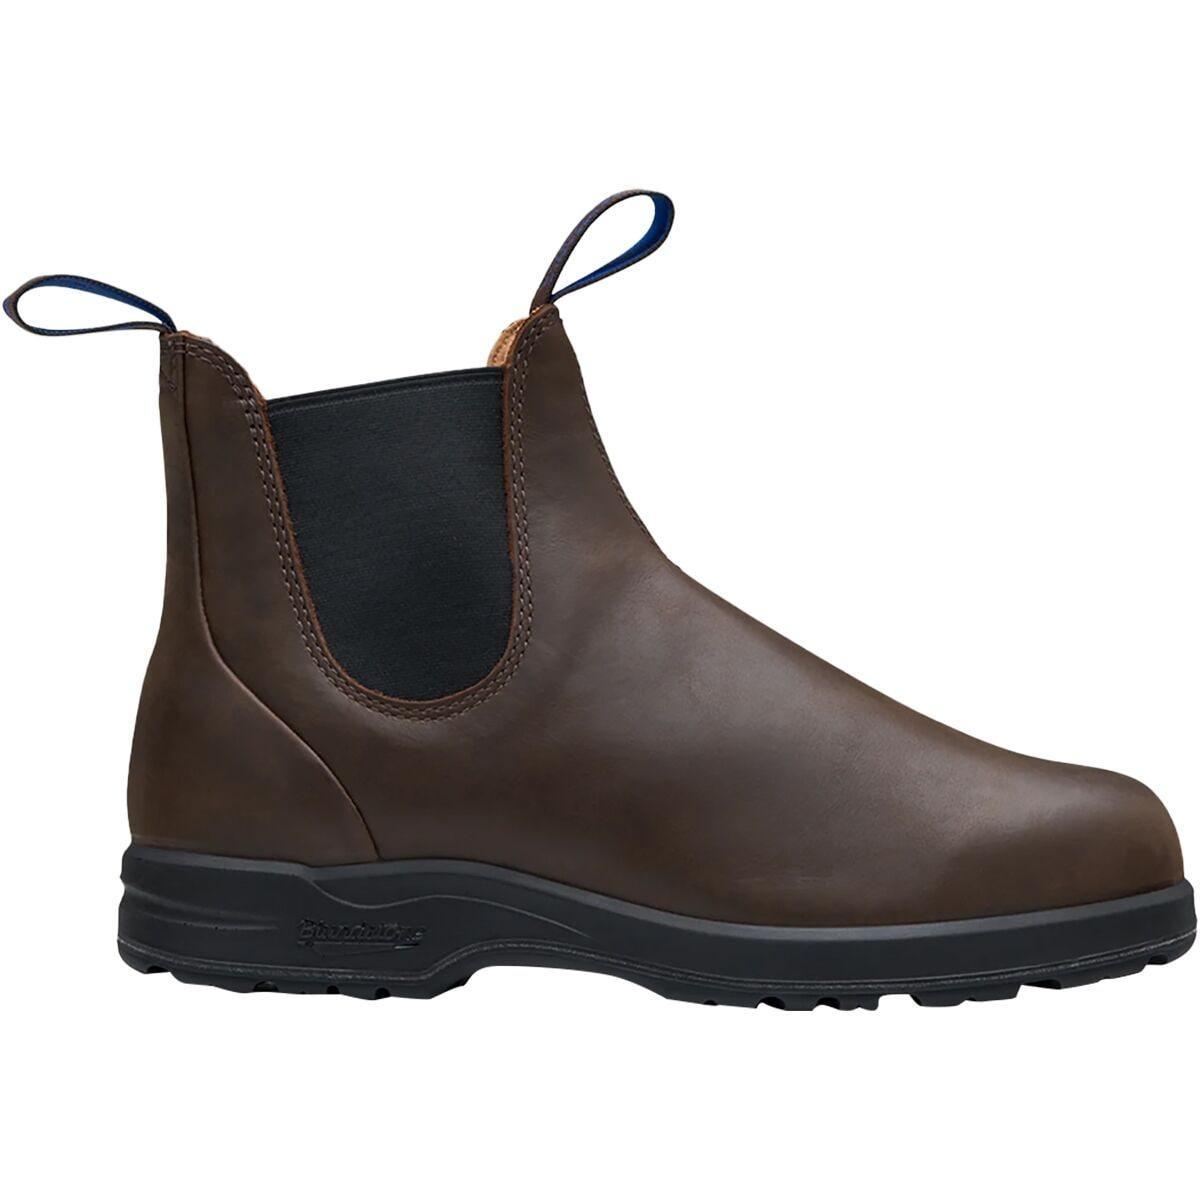 Blundstone Footwear Thermal Waterproof Genuine Shearling Lined Chelsea Boot Product Image